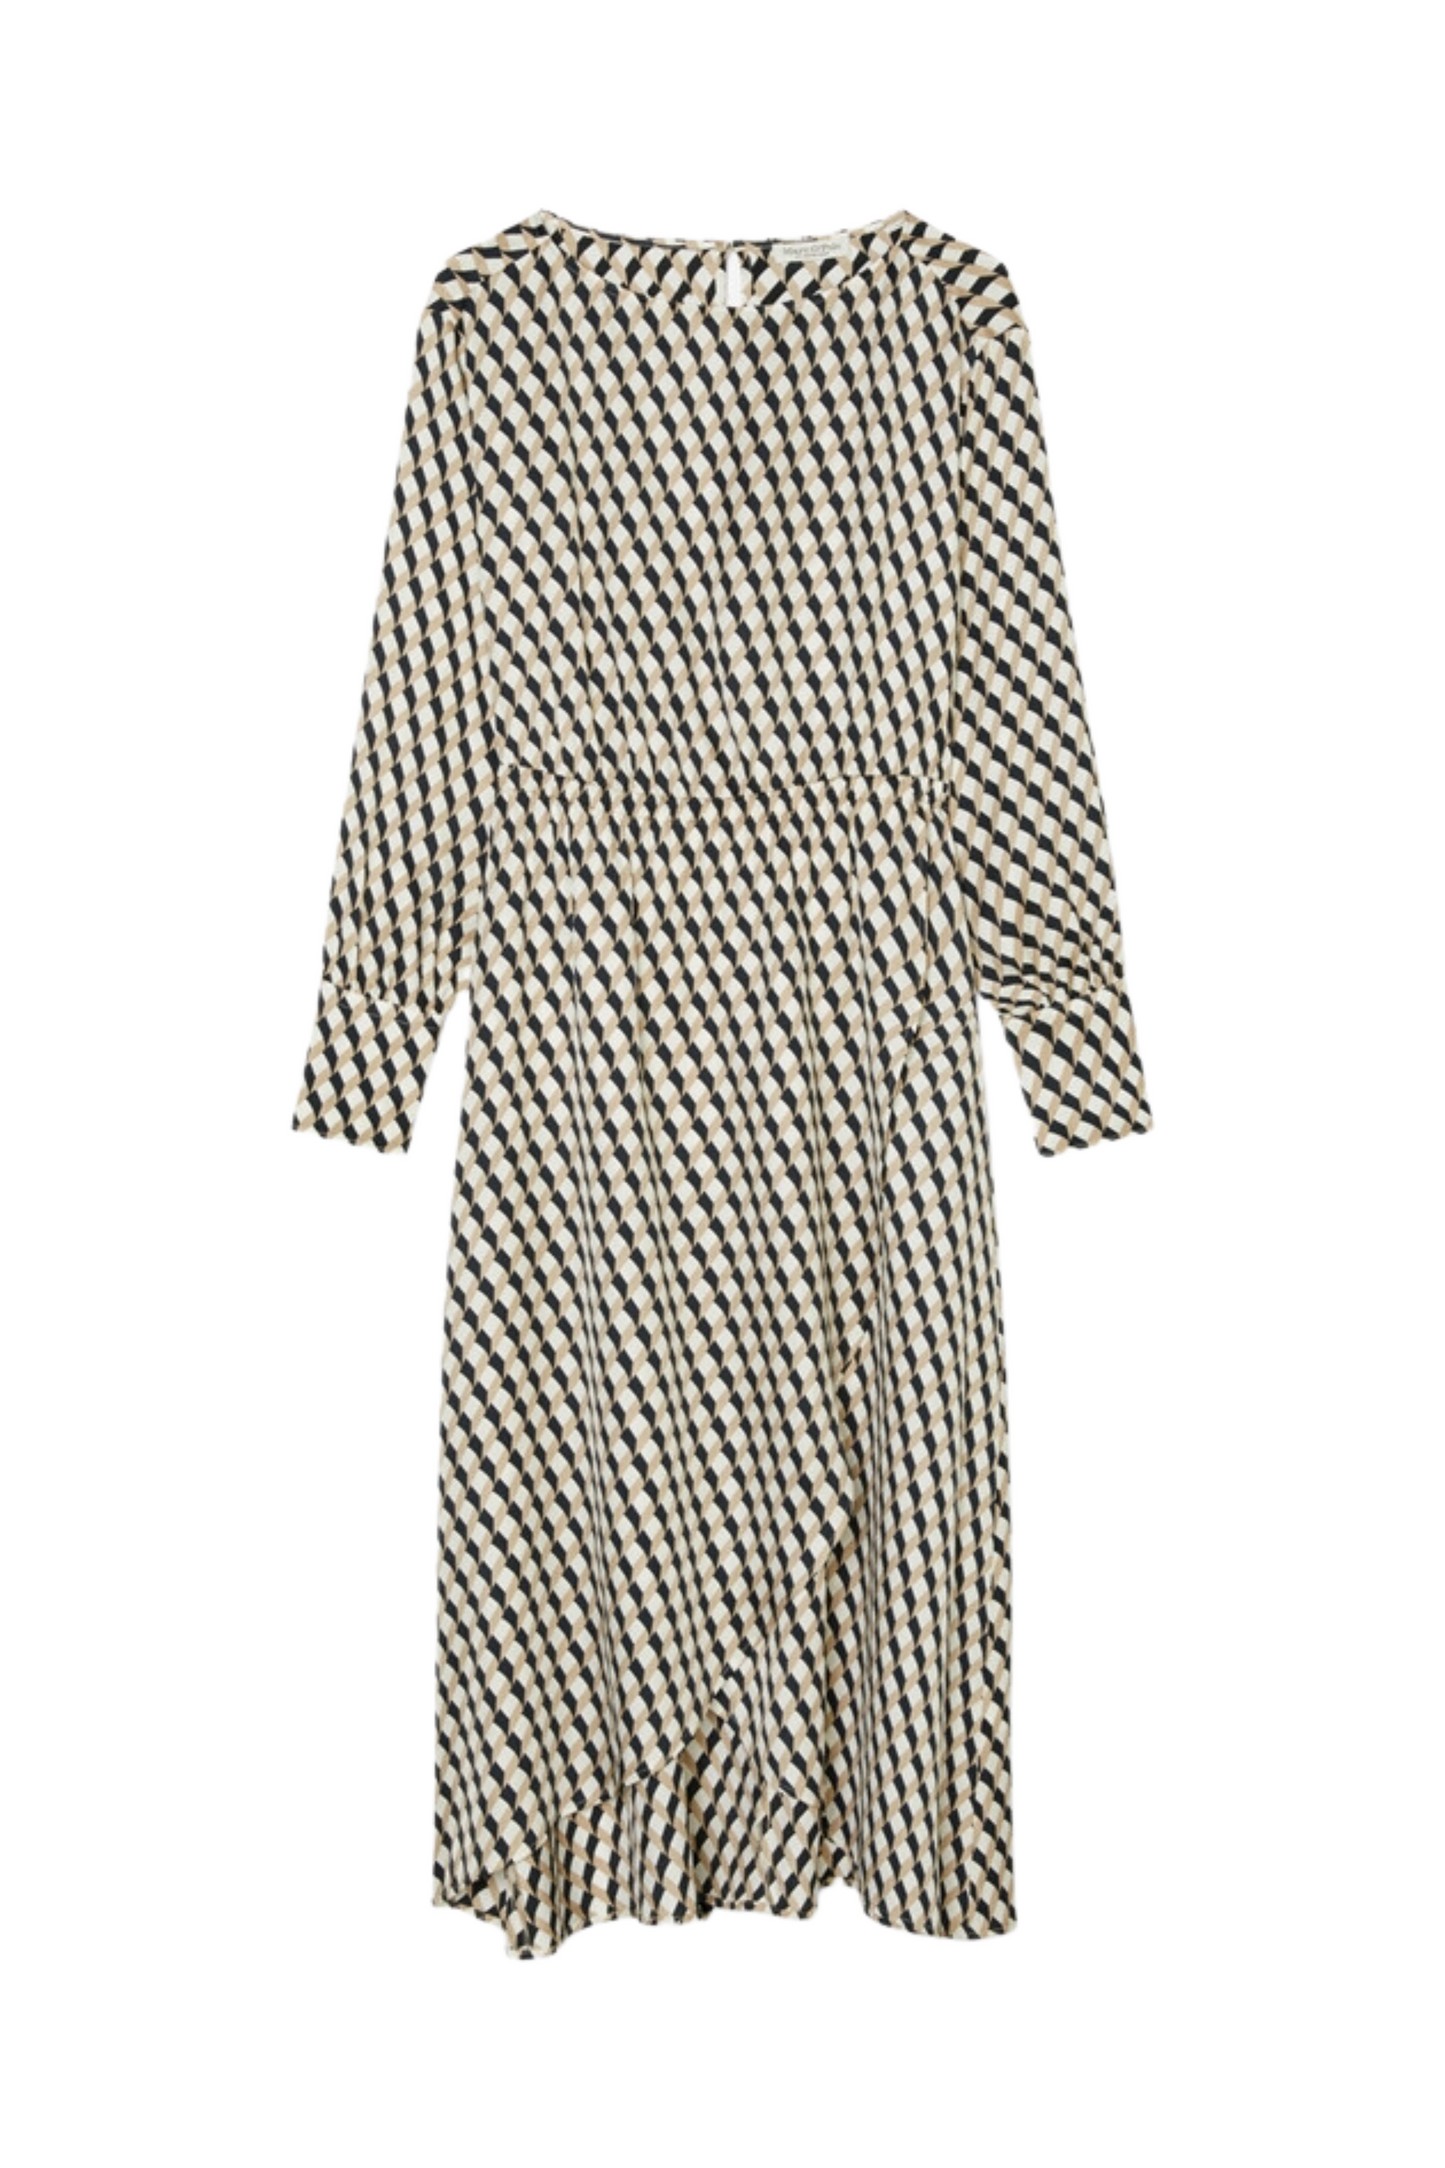 Soft Finish Pattern Dress